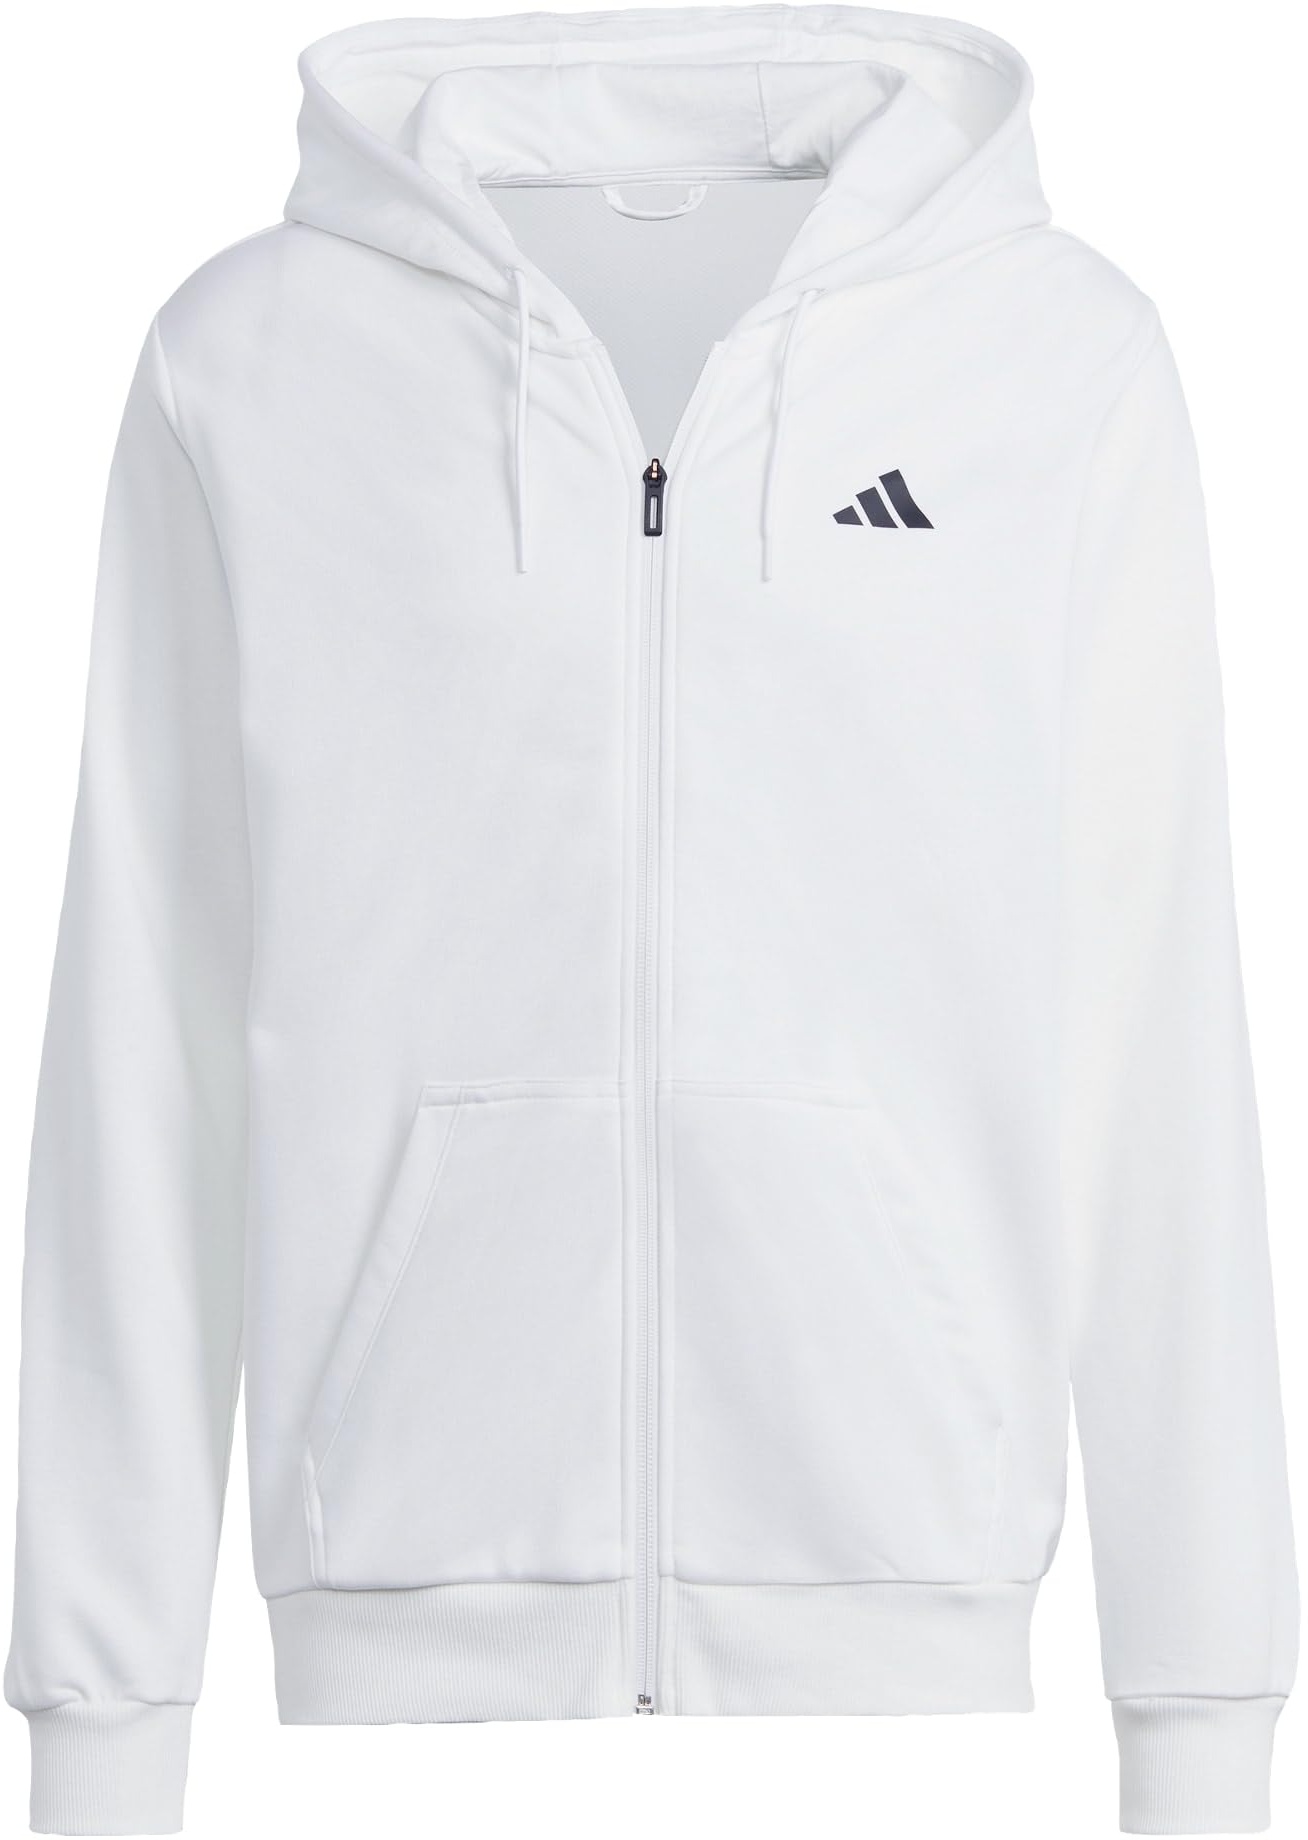 adidas Men's Club Teamwear Full-Zip Tennis Hoodie Kapuzensweatshirt, White, XL